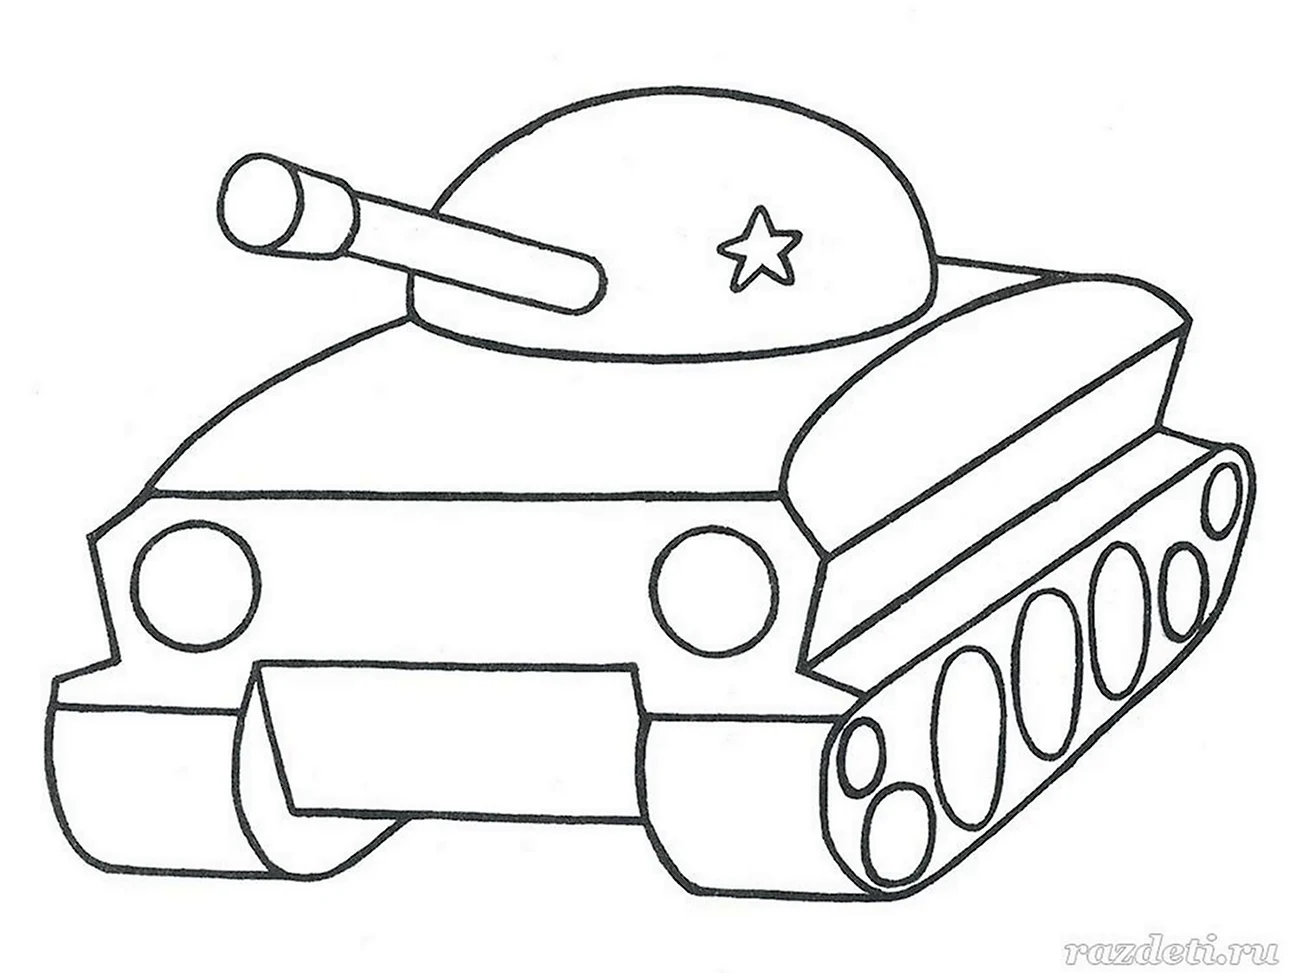 Трафарет танка для детей. Своими руками